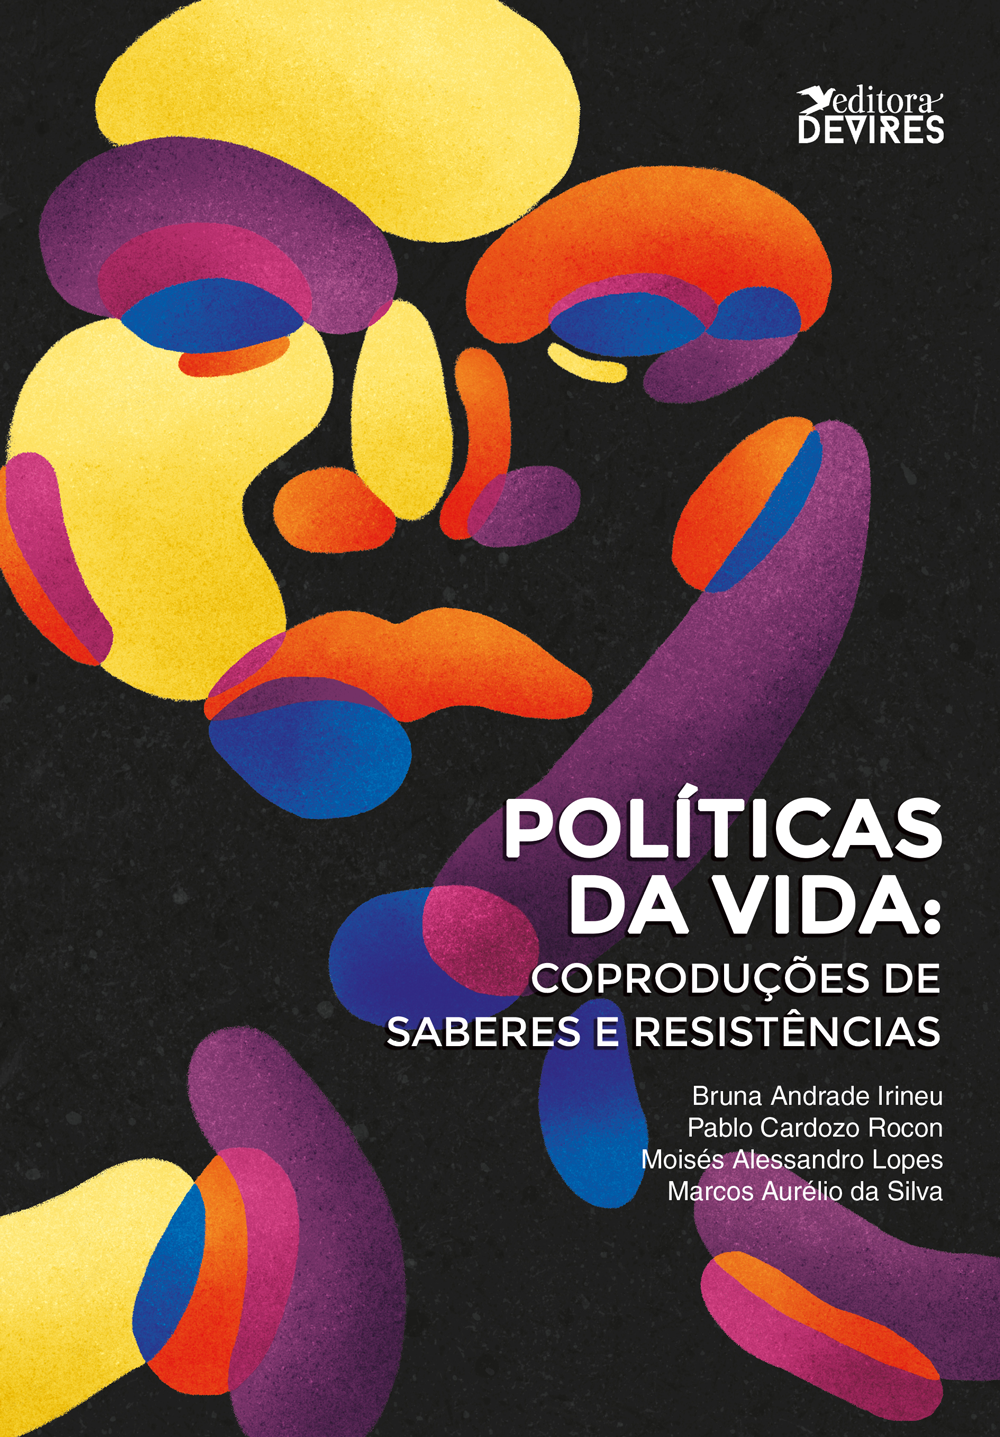 Ebook Gratuito: Políticas da Vida: Coproduções de Saberes e Resistências